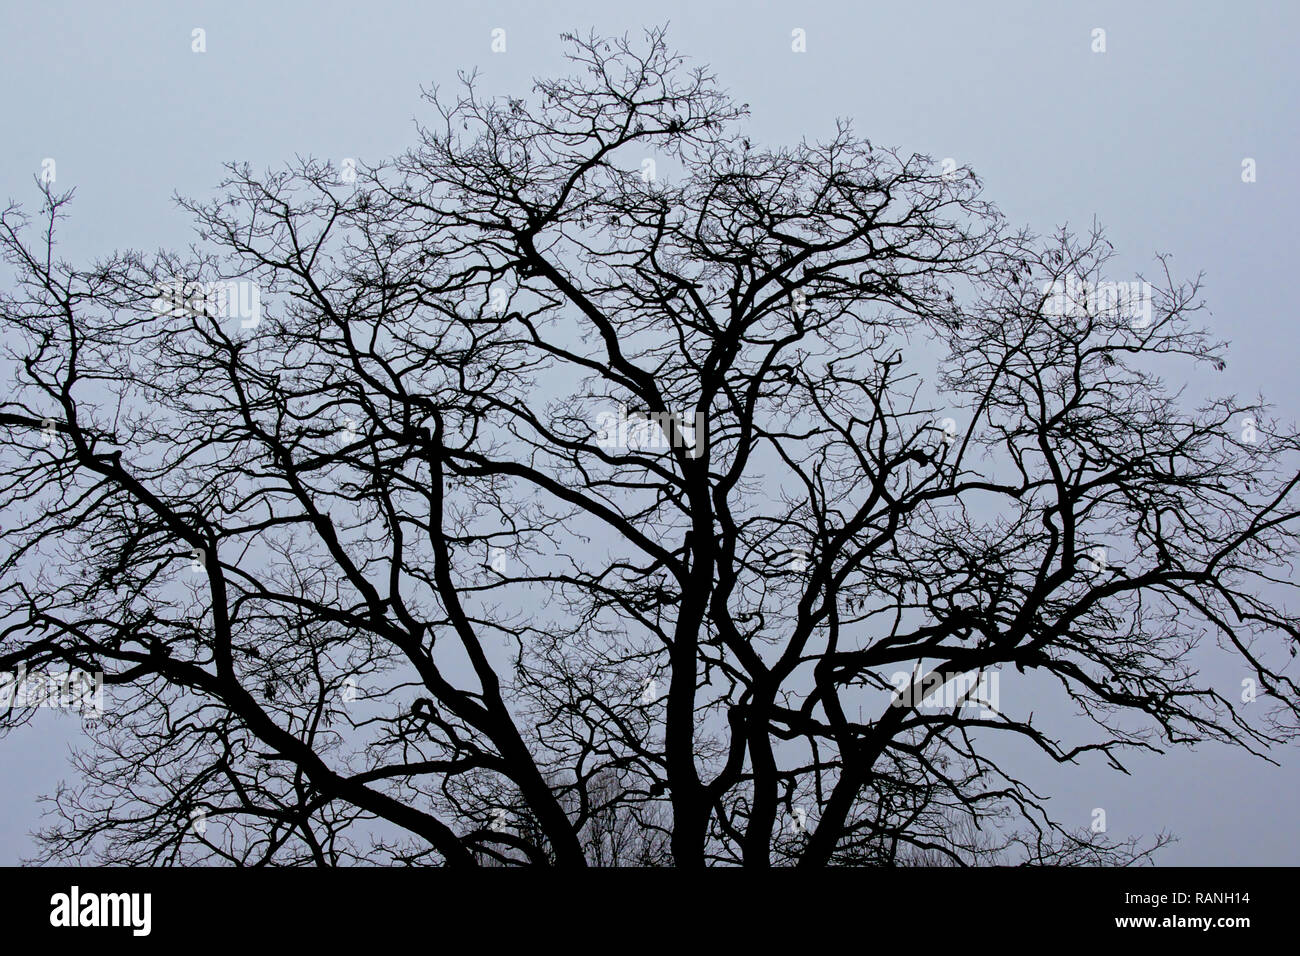 Branches irrégulières d'hiver arbre nu crest en silhouette contre un ciel couvert Banque D'Images